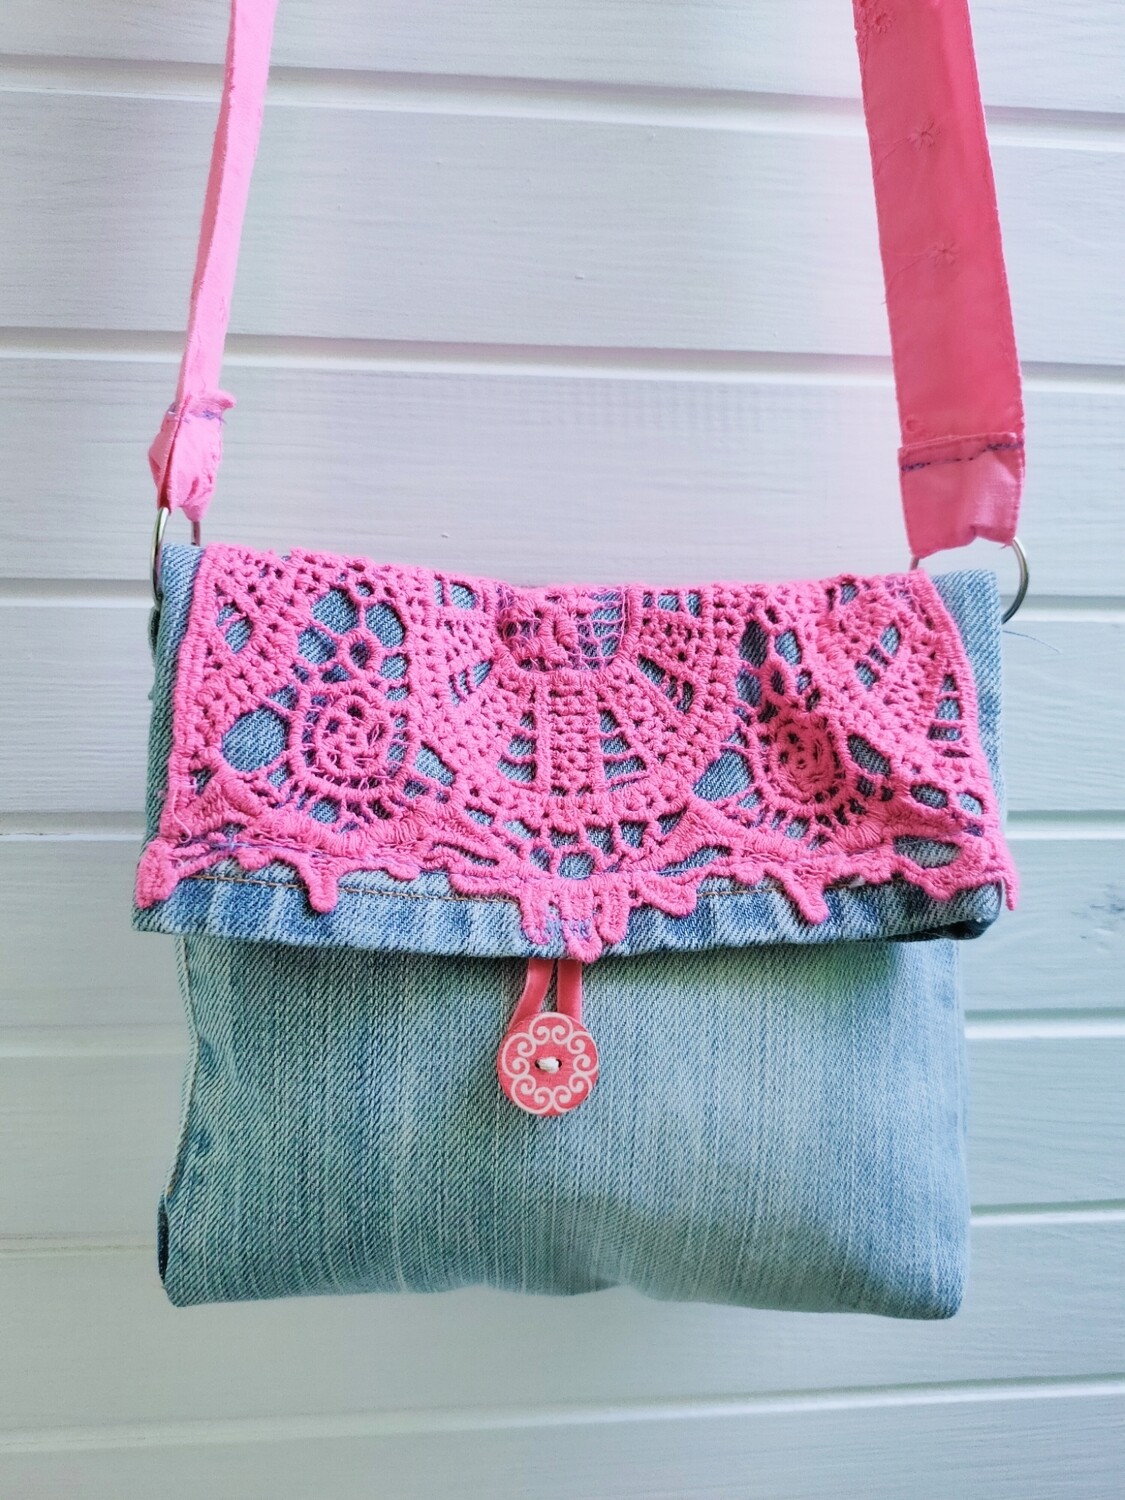 Brustbeutel kleine Handtasche hellblau mit Spitzendeckchen pink